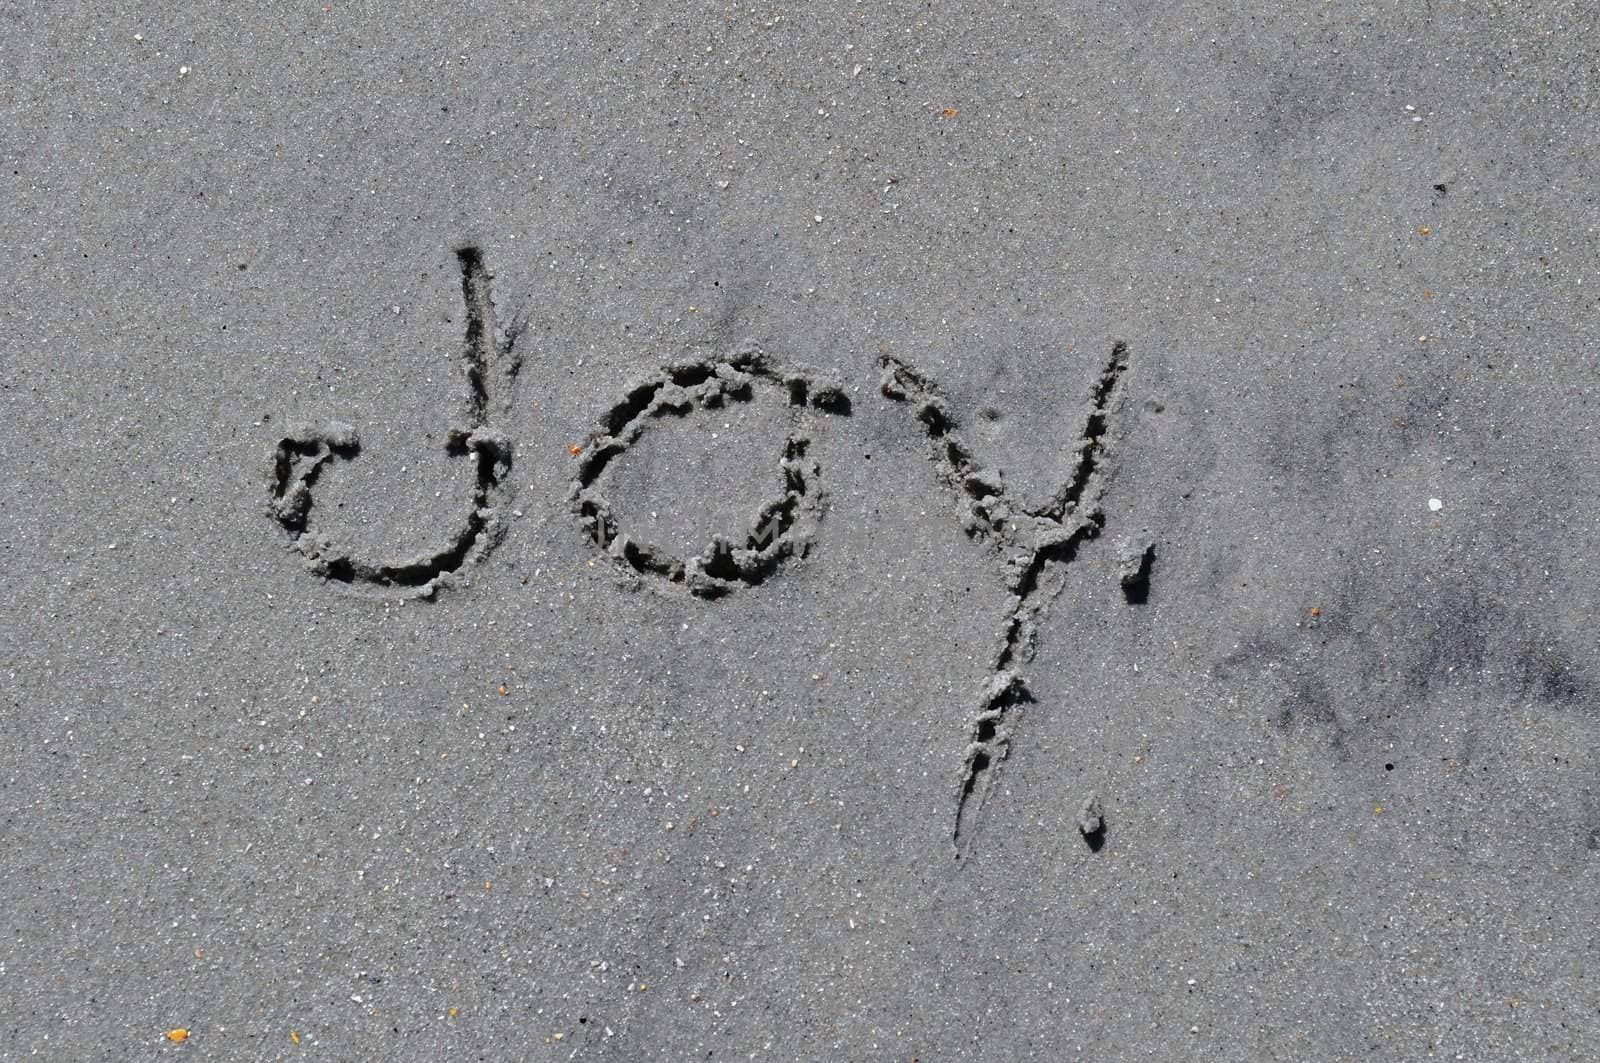 Joy Written In The Sand